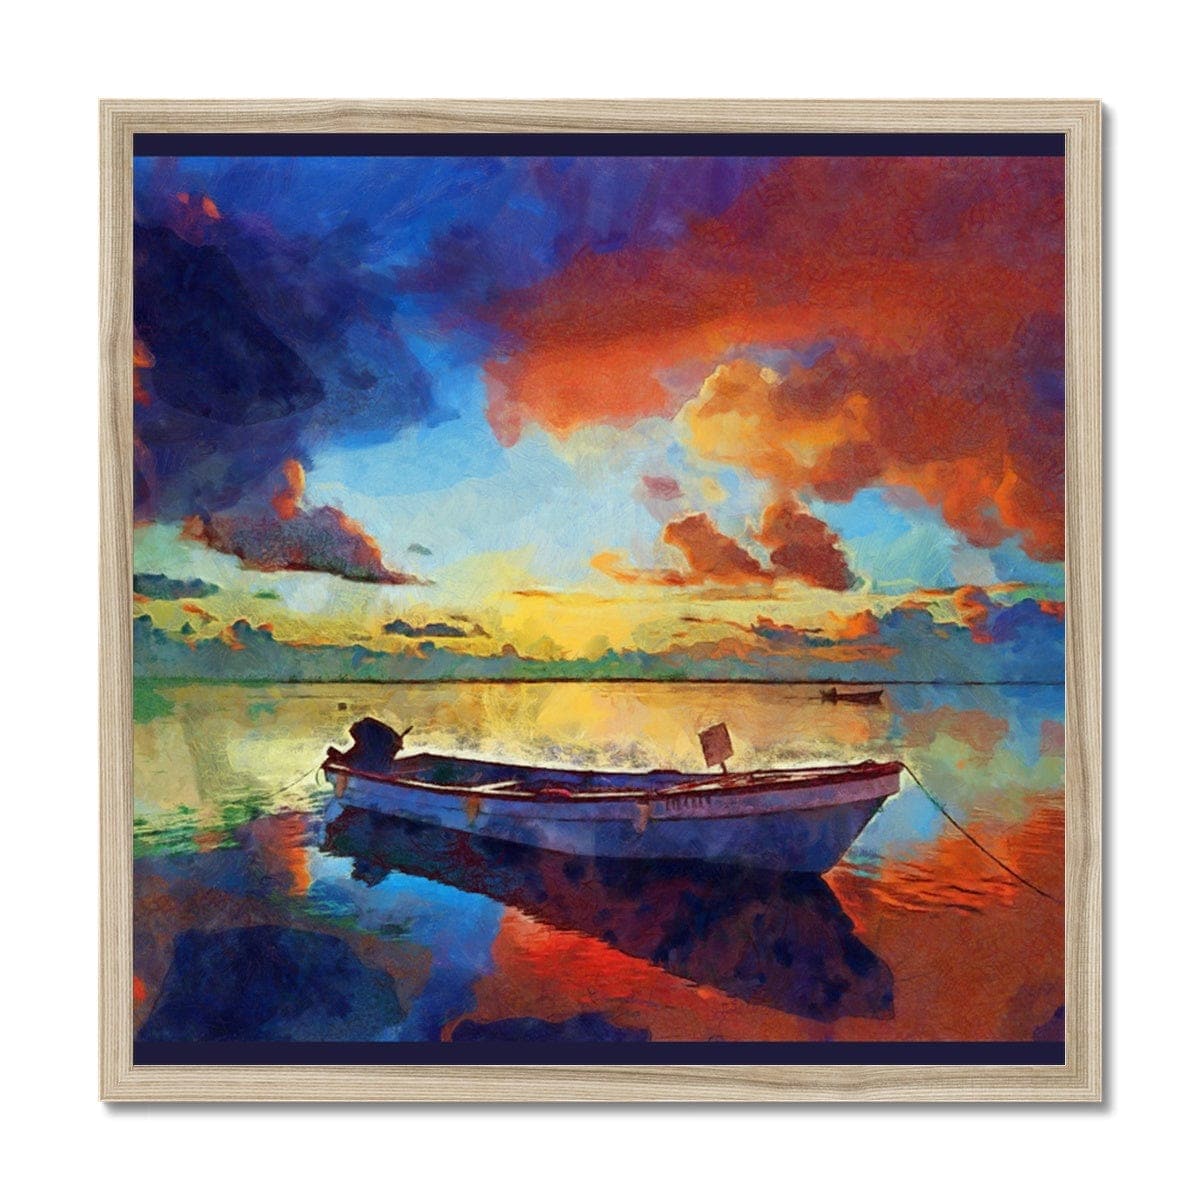 Boat at Orange Dawn in Lake Framed Print